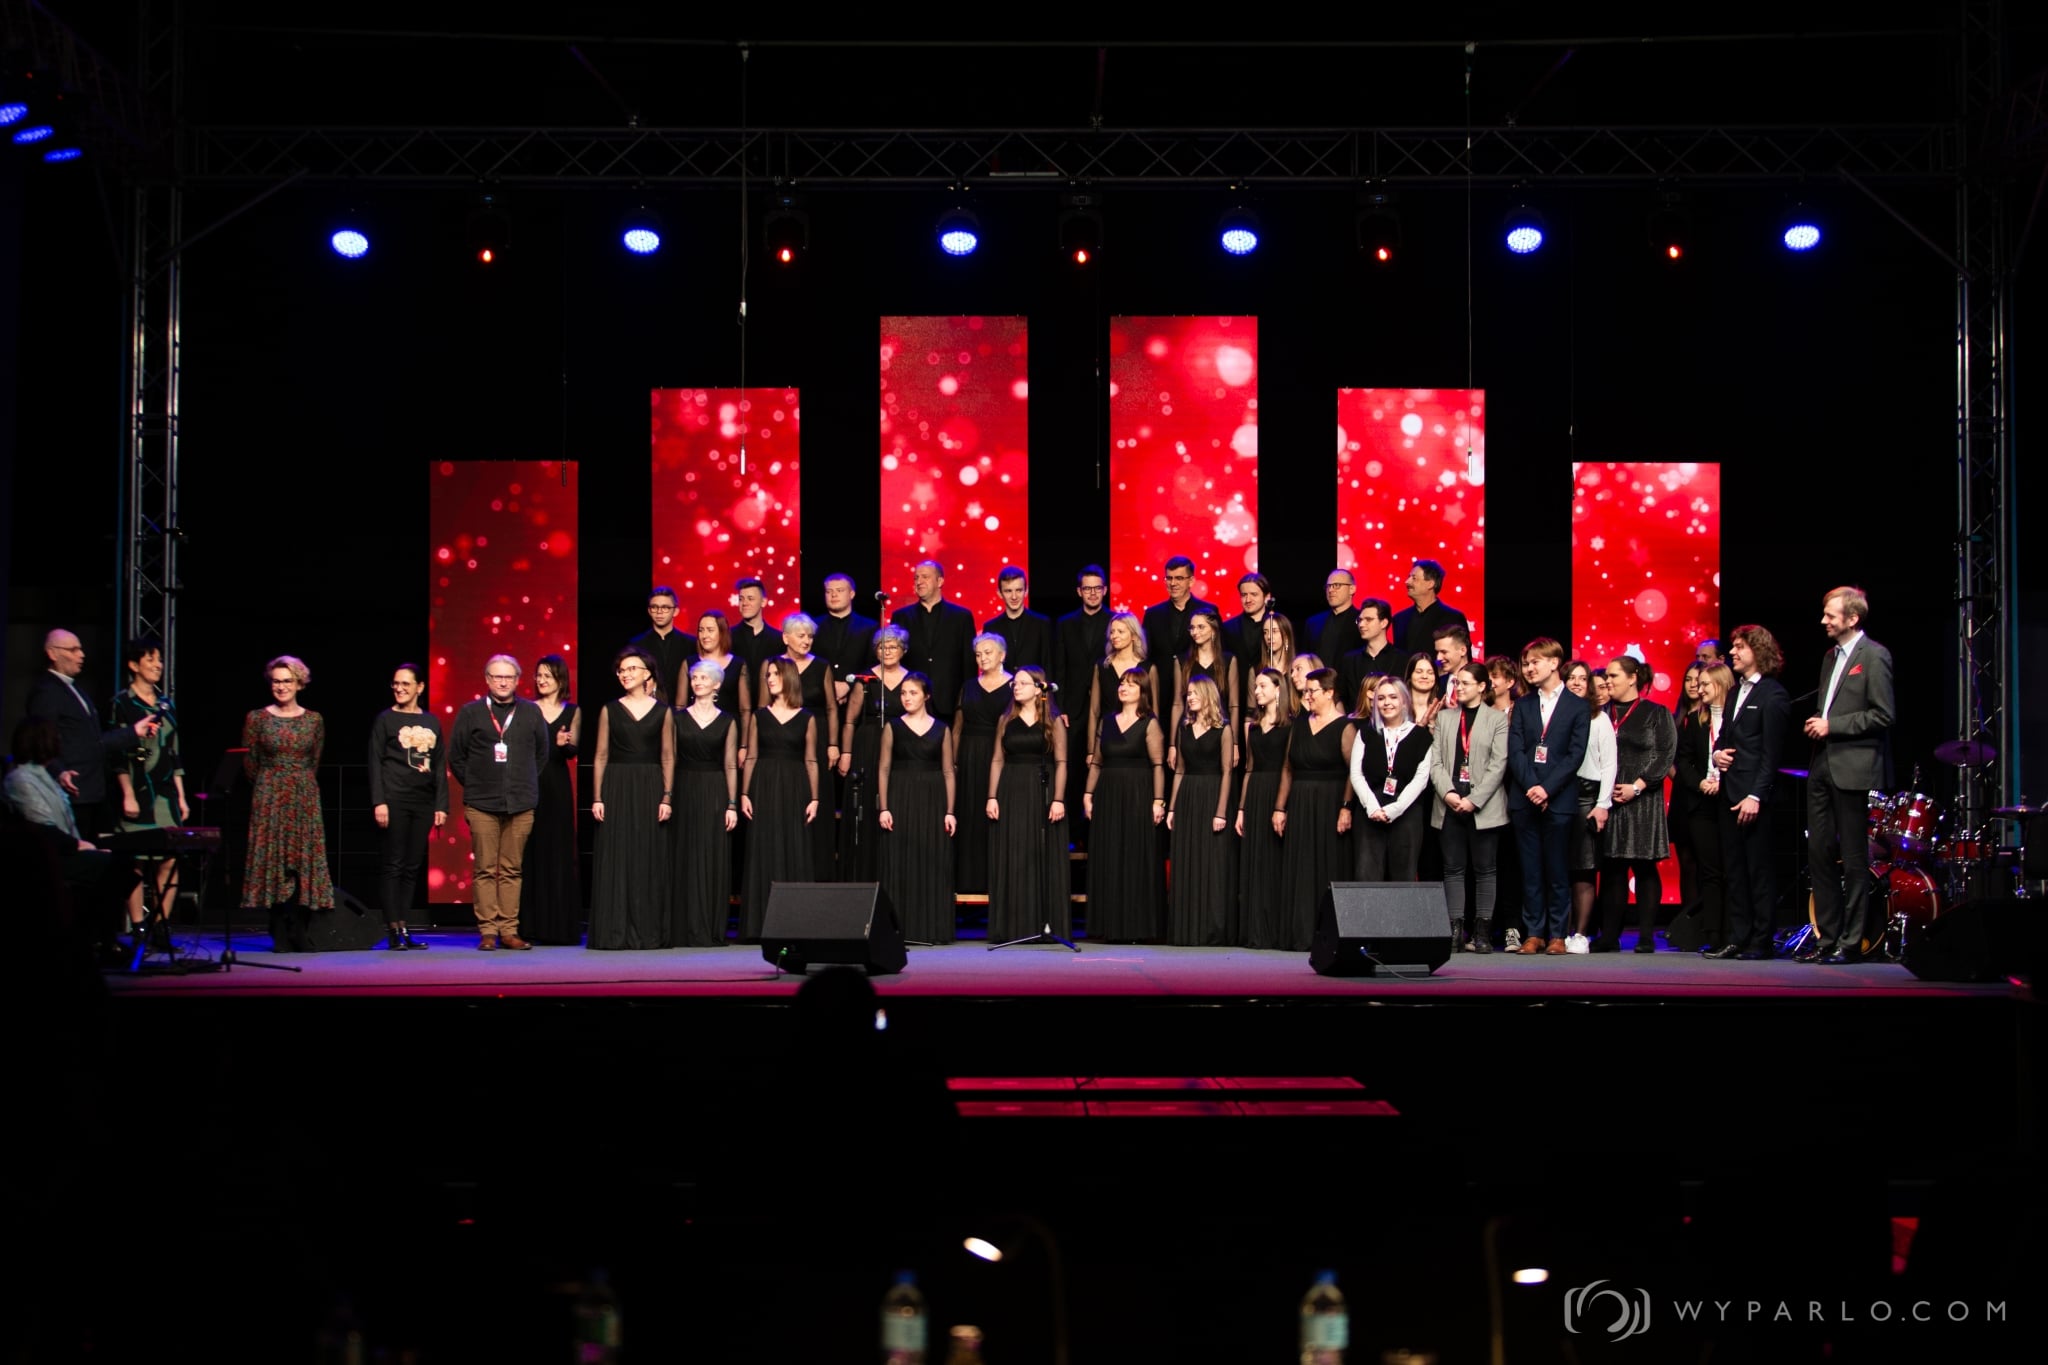 Zdjecie przedstawiajace grupę osób - członkowie chóru Lima Novum na scenie podczas wreczenia nagrody